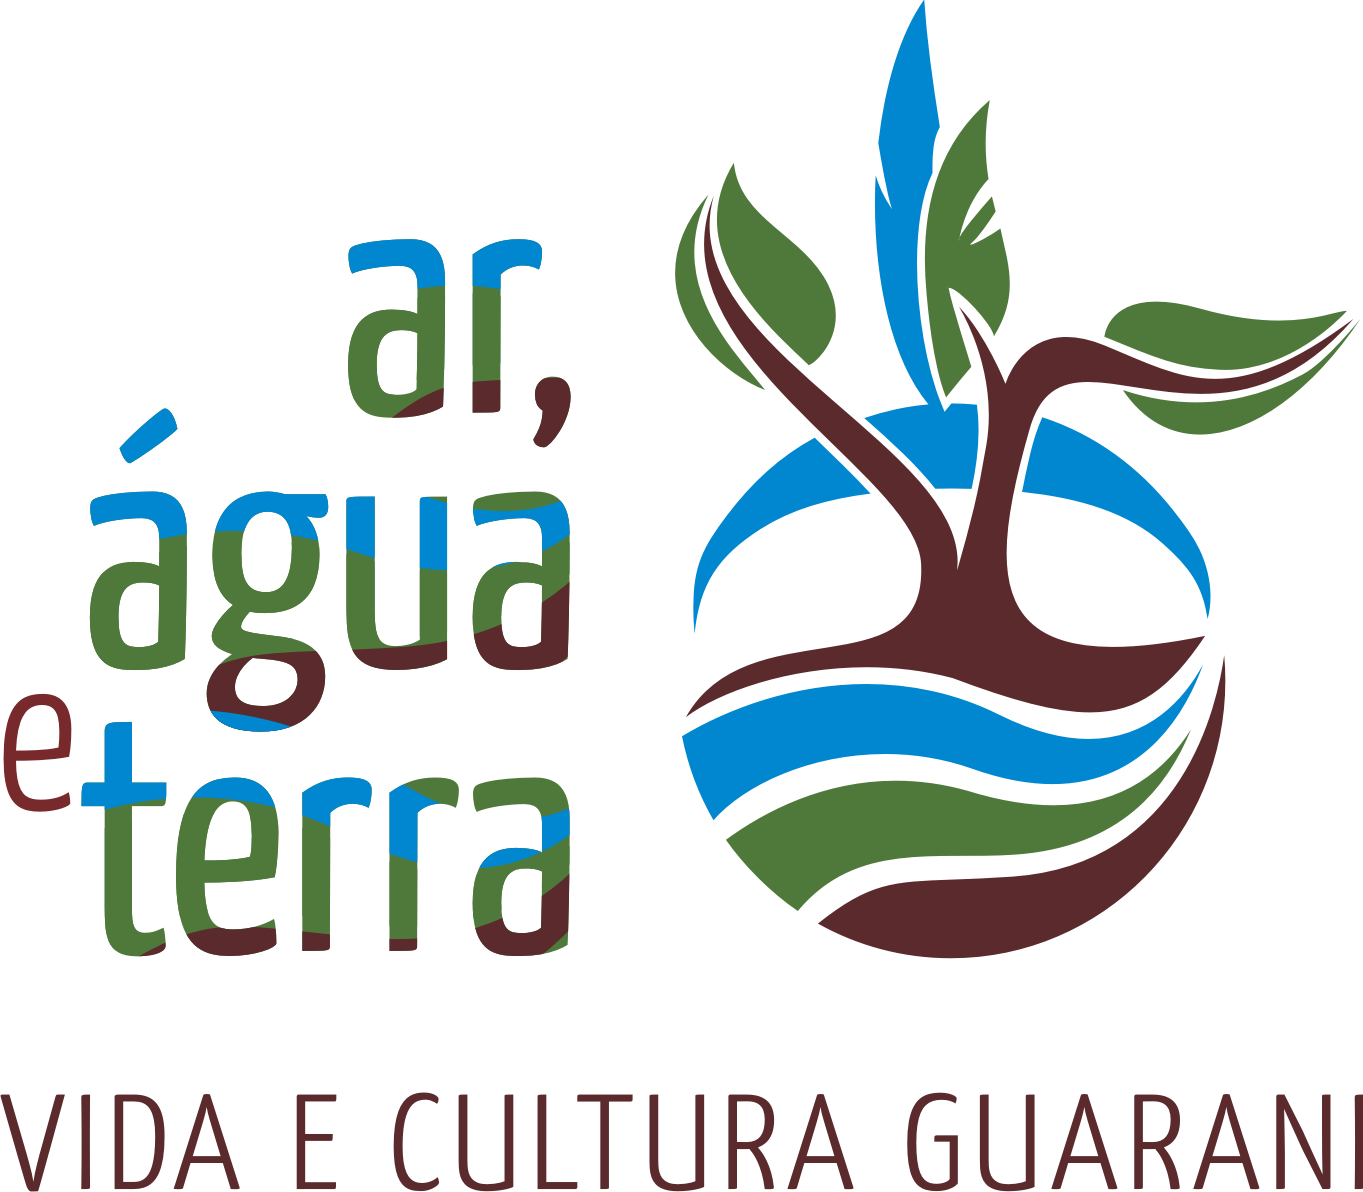 O projeto Ar, Água e Terra: Vida e Cultura Guarani proporciona trocas interculturais